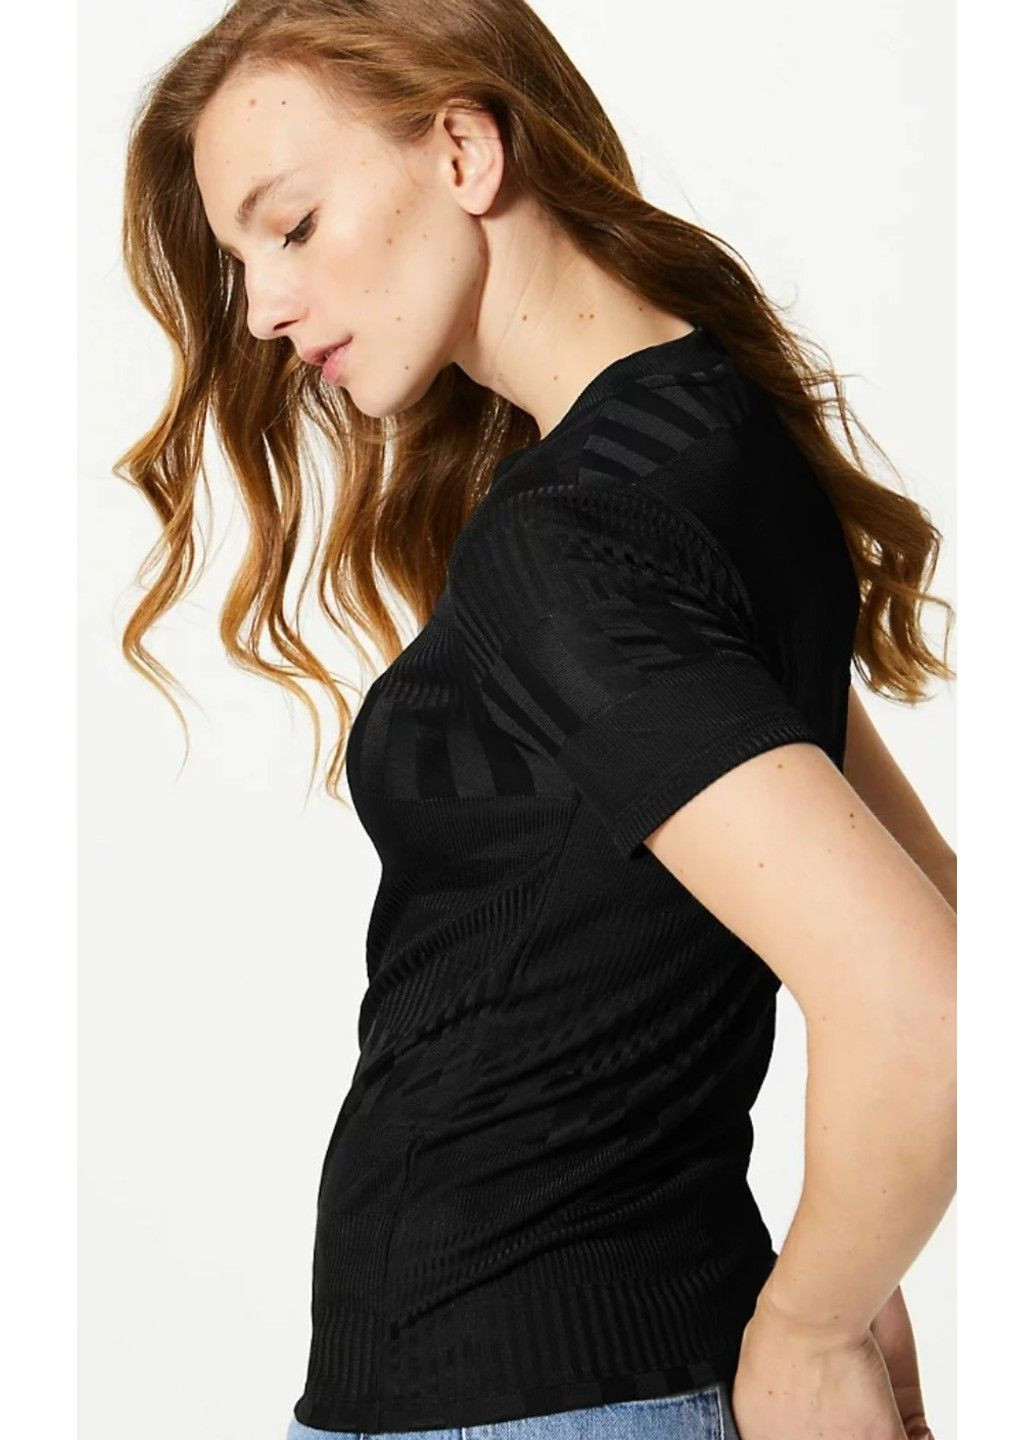 Чорна всесезон жіноча приталена футболка з круглим вирізом (56753) 18 чорна M&S